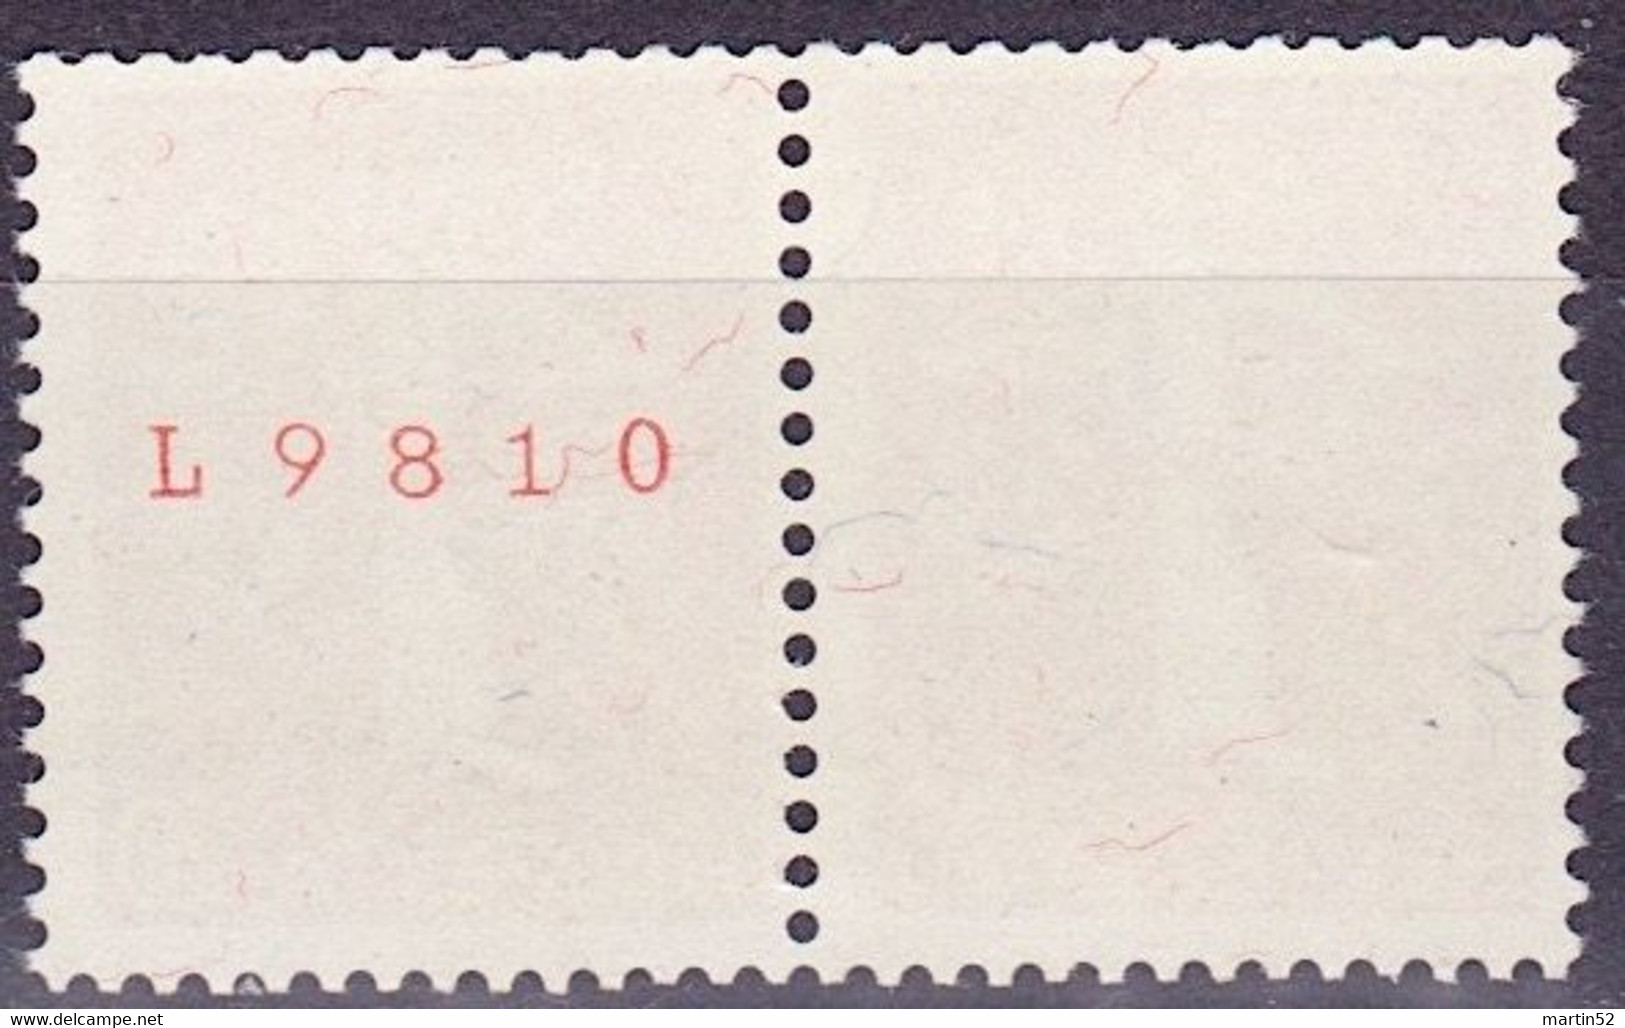 Schweiz Suisse 1939: Zusammendruck Se-tenant Zu Z27e Mi W21 ** Mit Nr. Avec N° L9810 Postfrisch MNH (Zumstein CHF 30.00) - Rollen